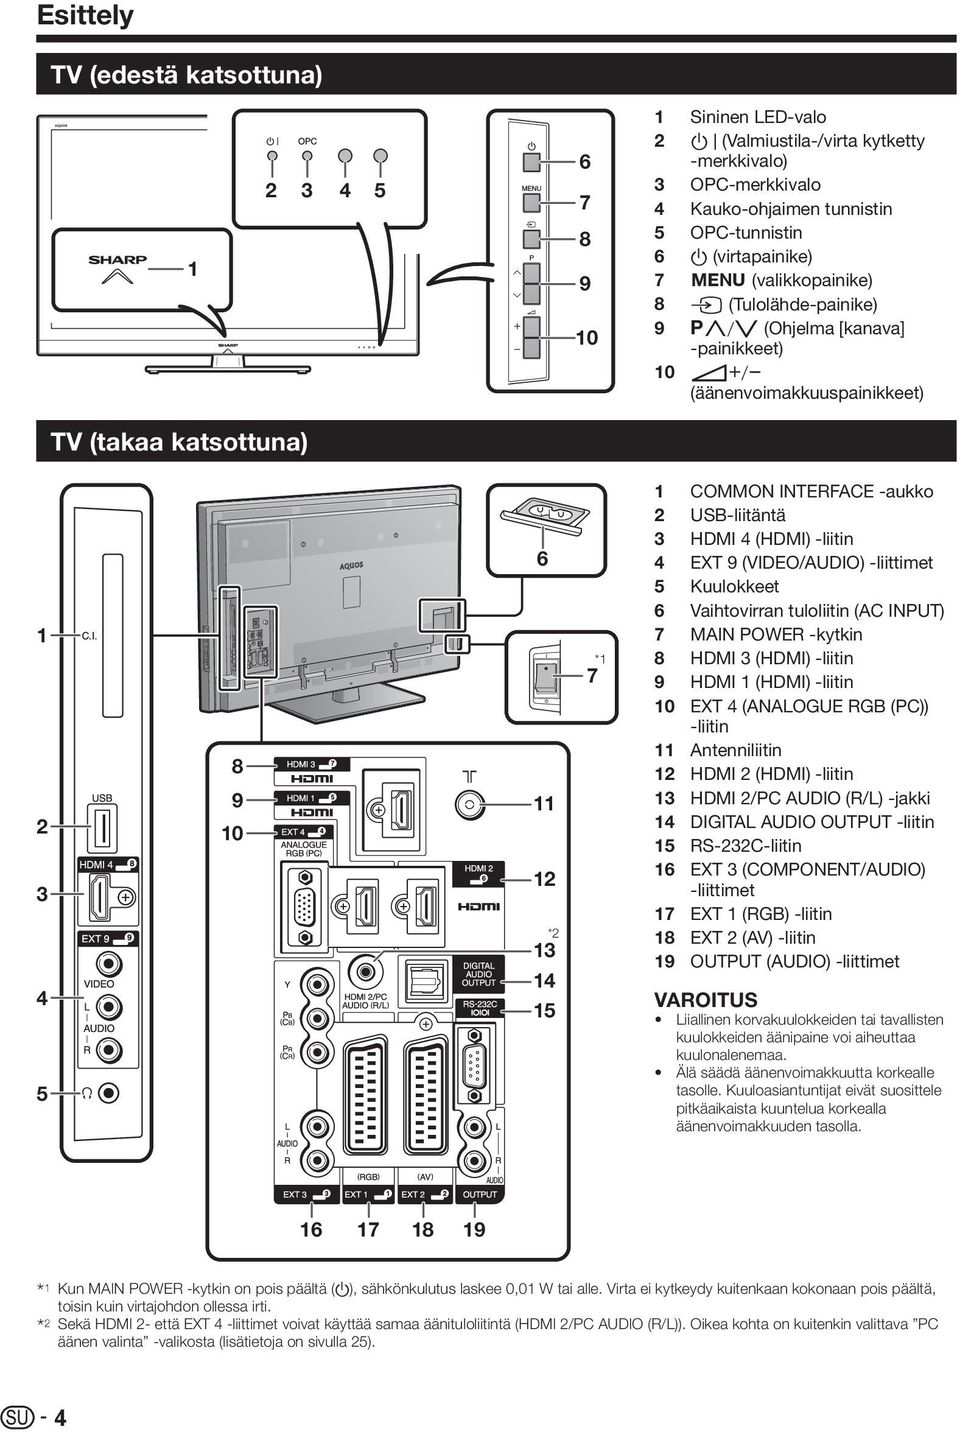 6 7 8 9 10 11 12 13 14 15 16 17 18 19 COMMON INTERFACE -aukko USB-liitäntä HDMI 4 (HDMI) -liitin EXT 9 (VIDEO/AUDIO) -liittimet Kuulokkeet Vaihtovirran tuloliitin (AC INPUT) MAIN POWER -kytkin HDMI 3